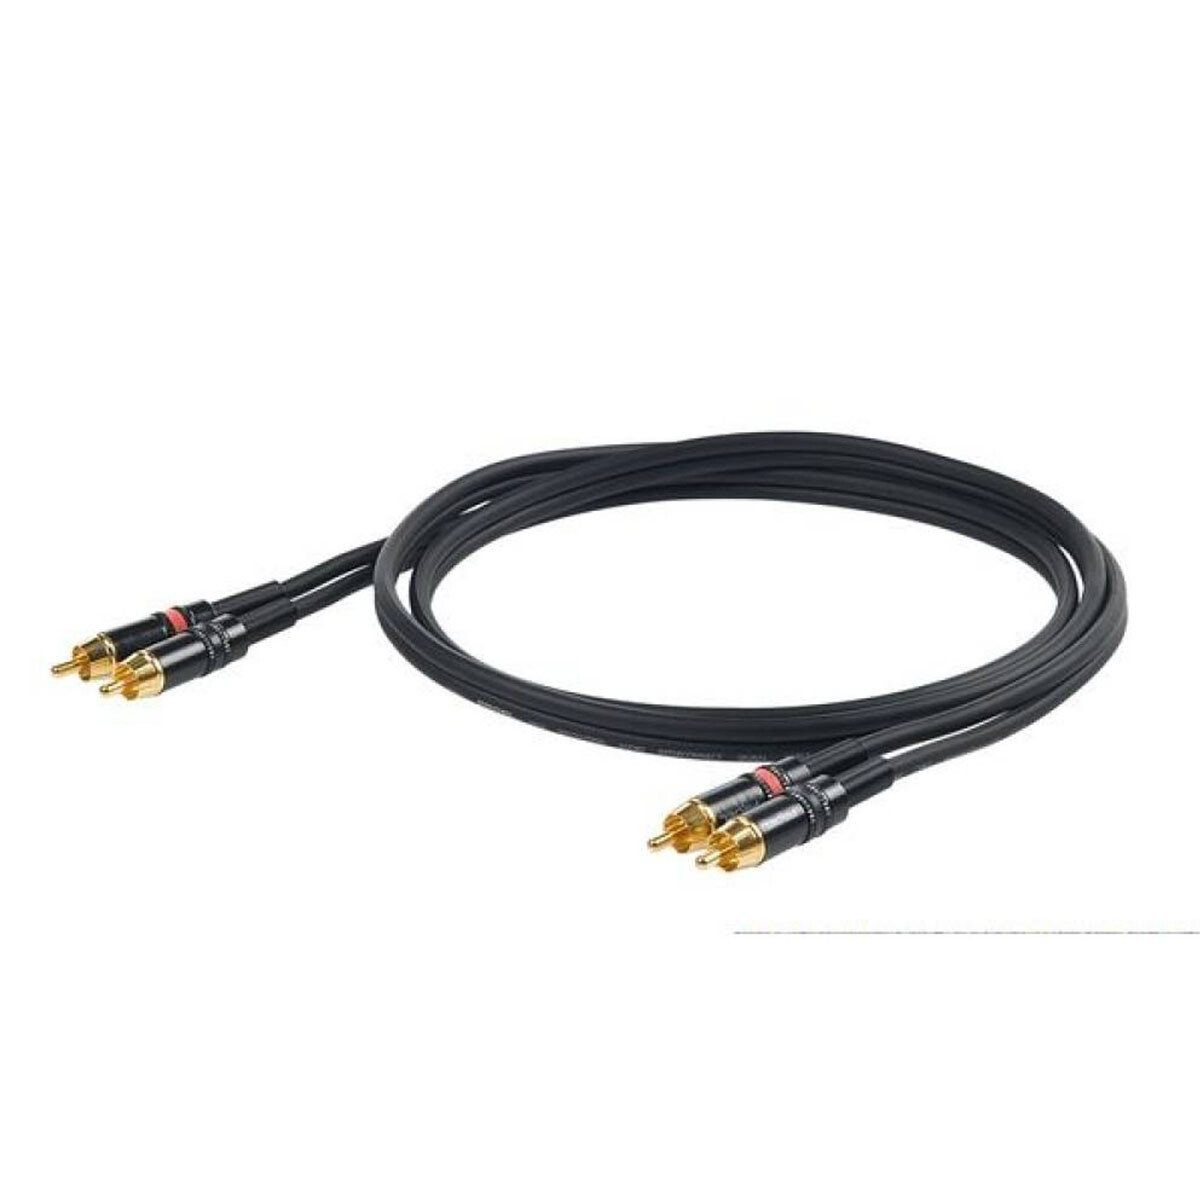 Cable Adaptador Proel Chlp250lu15 2xrca+2xrca 1.5m 